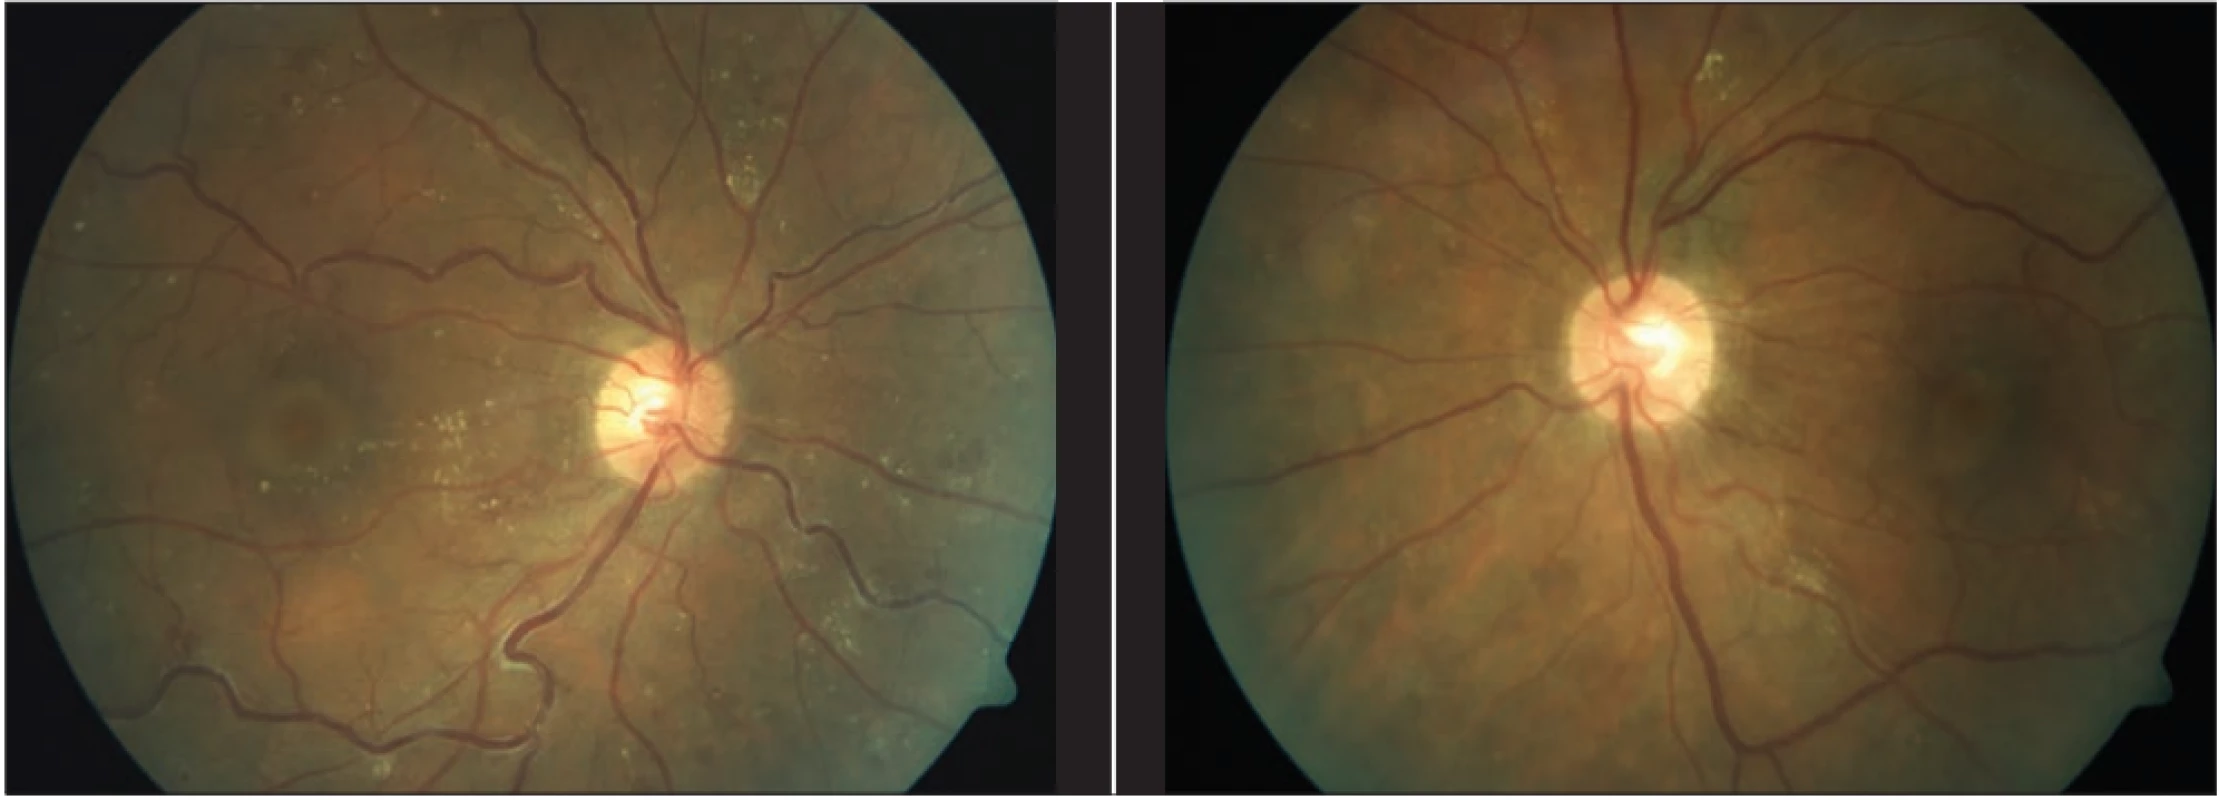 Nález na fundu obou očí s časovým odstupem po laserové koagulaci sítnice: vstřebání retinálních hemoragií, částečně
i tvrdých exsudátů, vény již méně dilatované a tortuózní